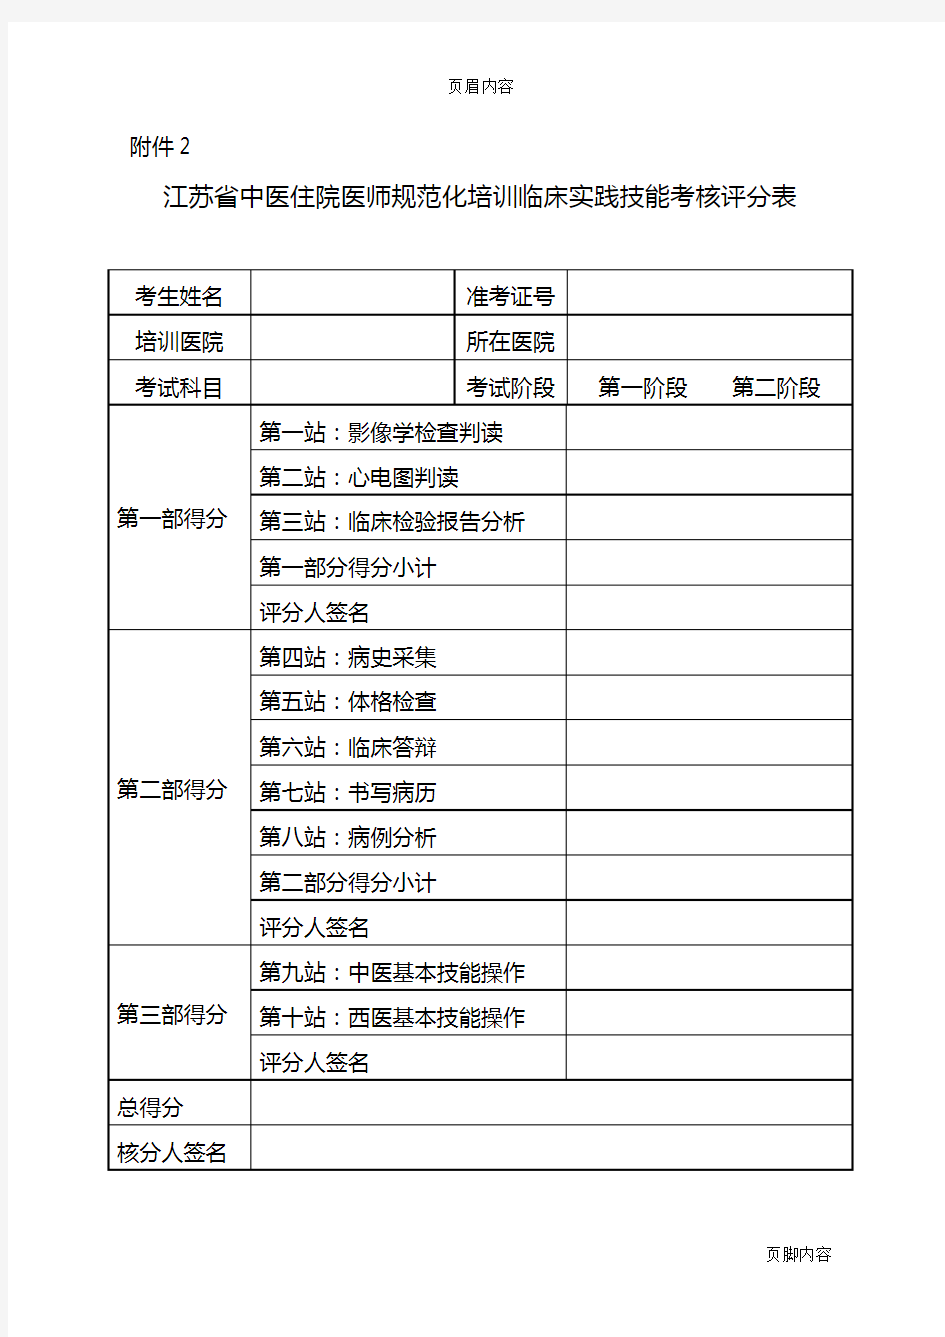 江苏省中医住院医师规范化培训临床实践技能考核评分表